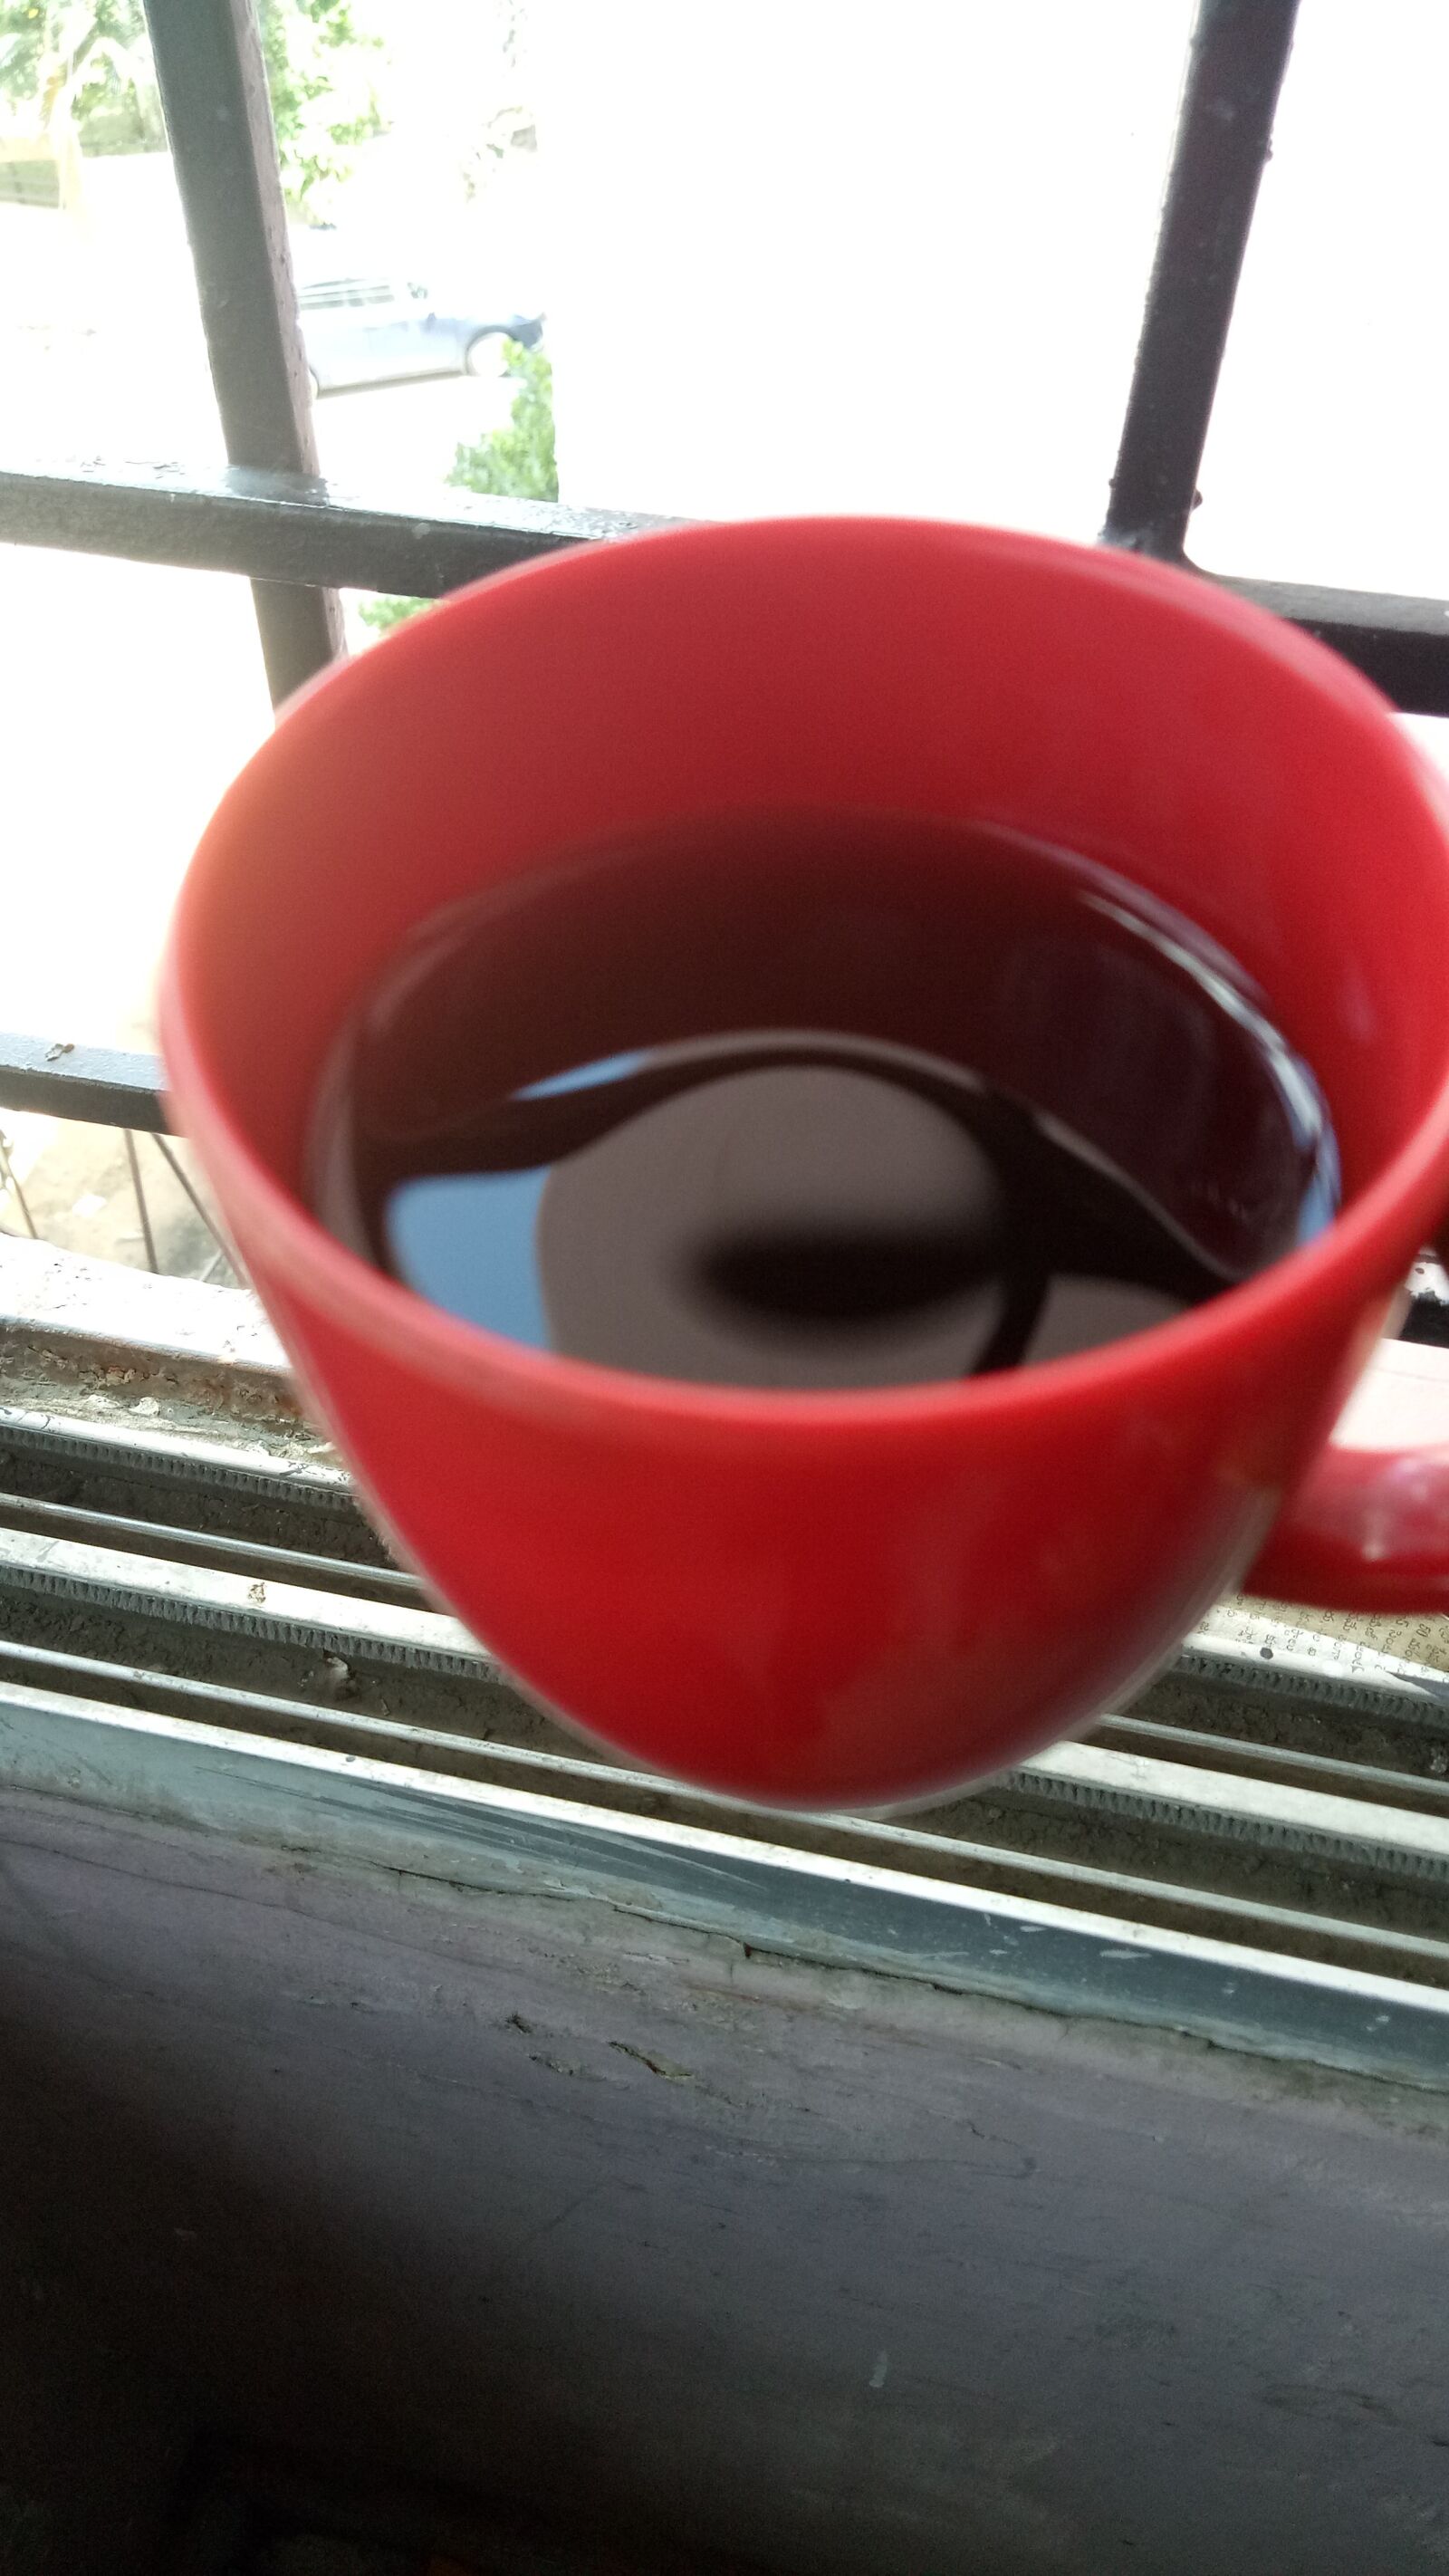 OPPO CPH1609 sample photo. Black tea, morning tea photography